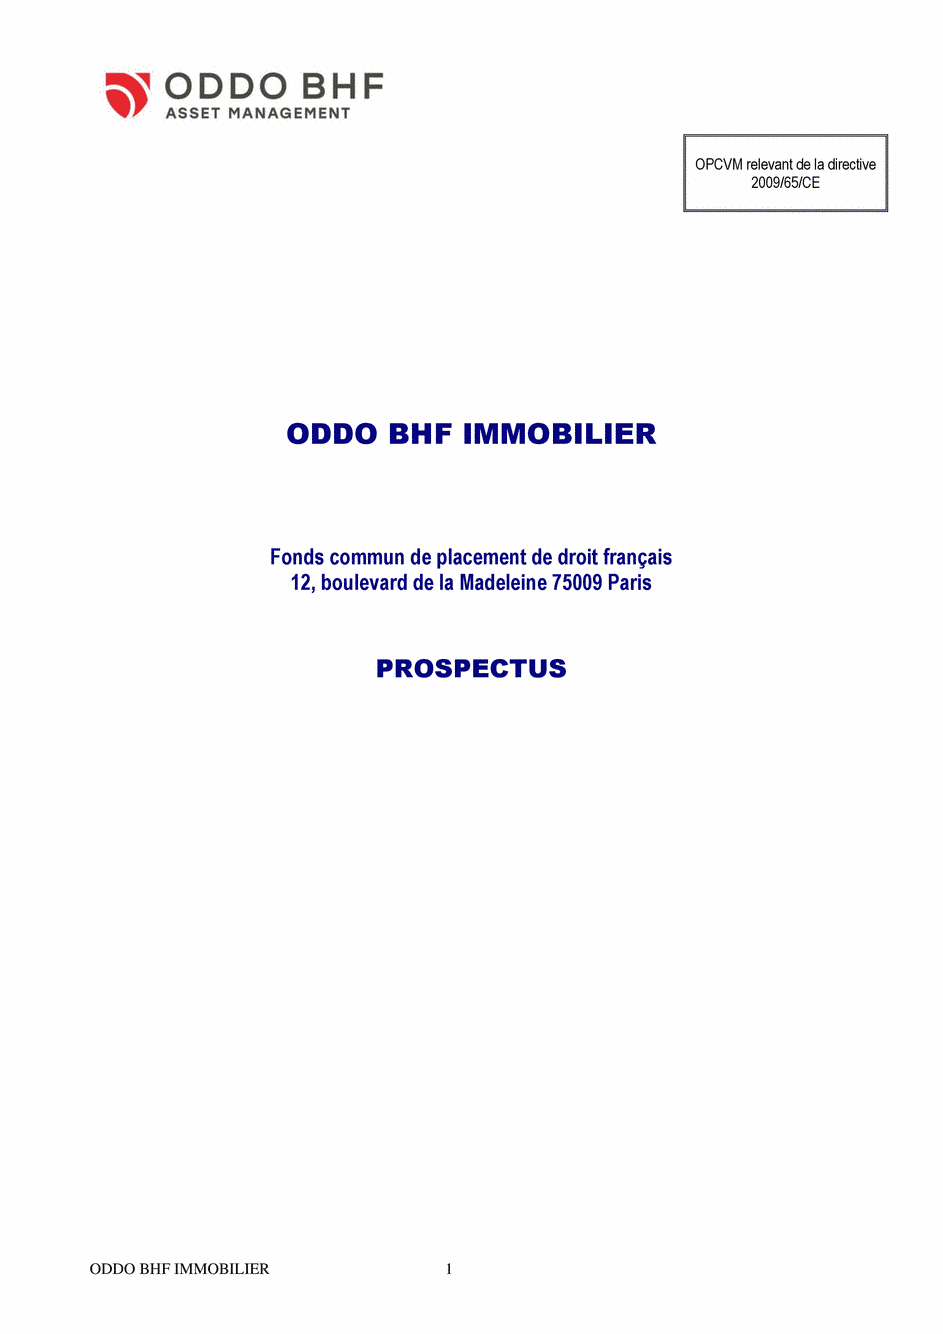 Prospectus ODDO BHF IMMOBILIER GC-EUR - 15/07/2020 - Français